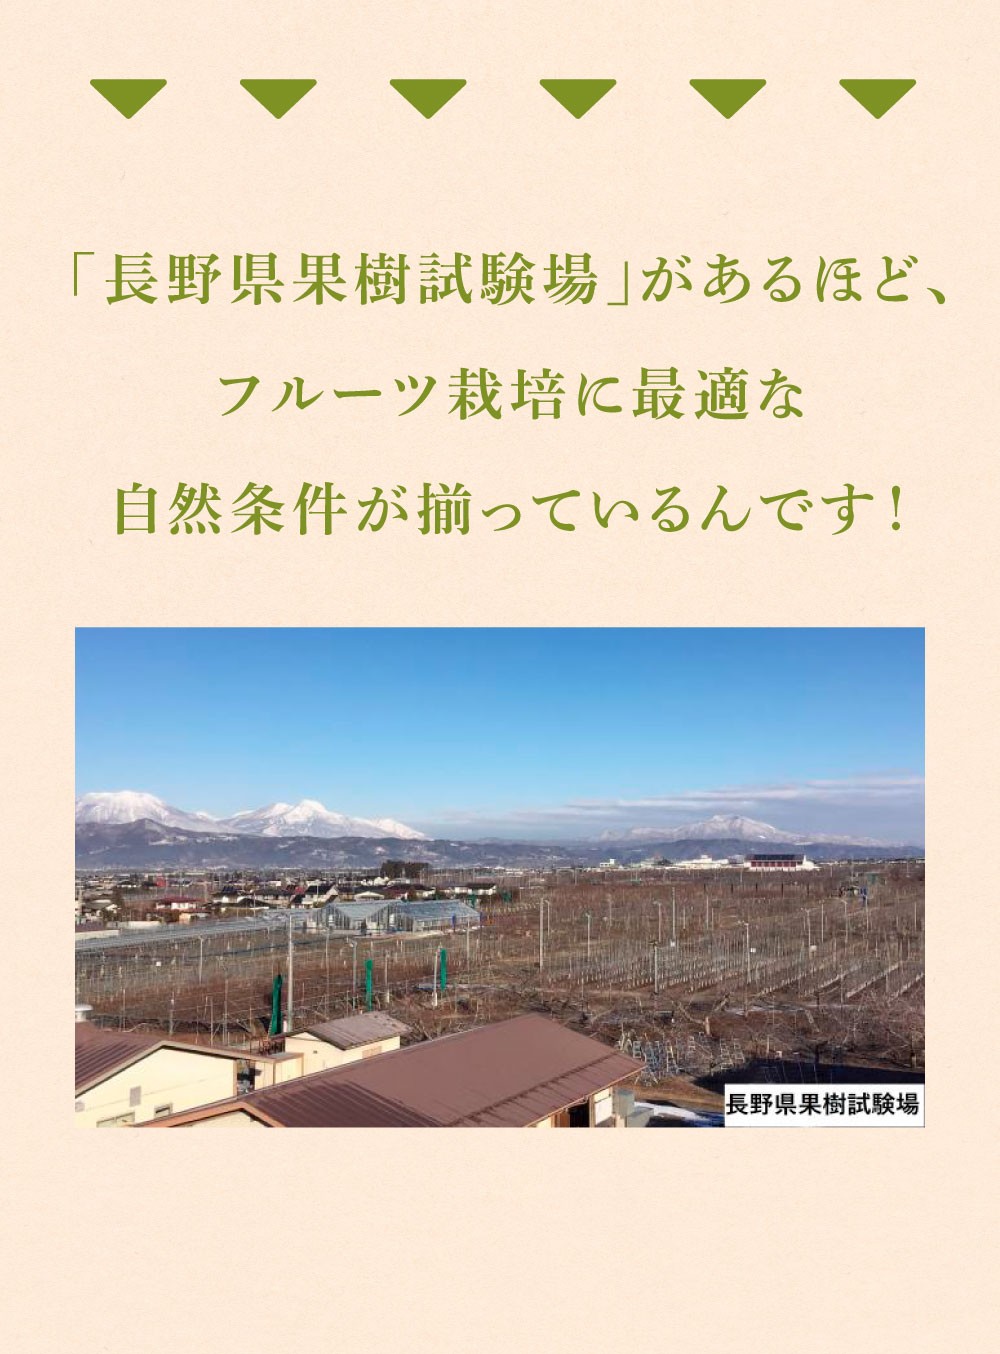 長野県果樹試験場があるほどシャインマスカット作りに最適な自然条件が揃っている